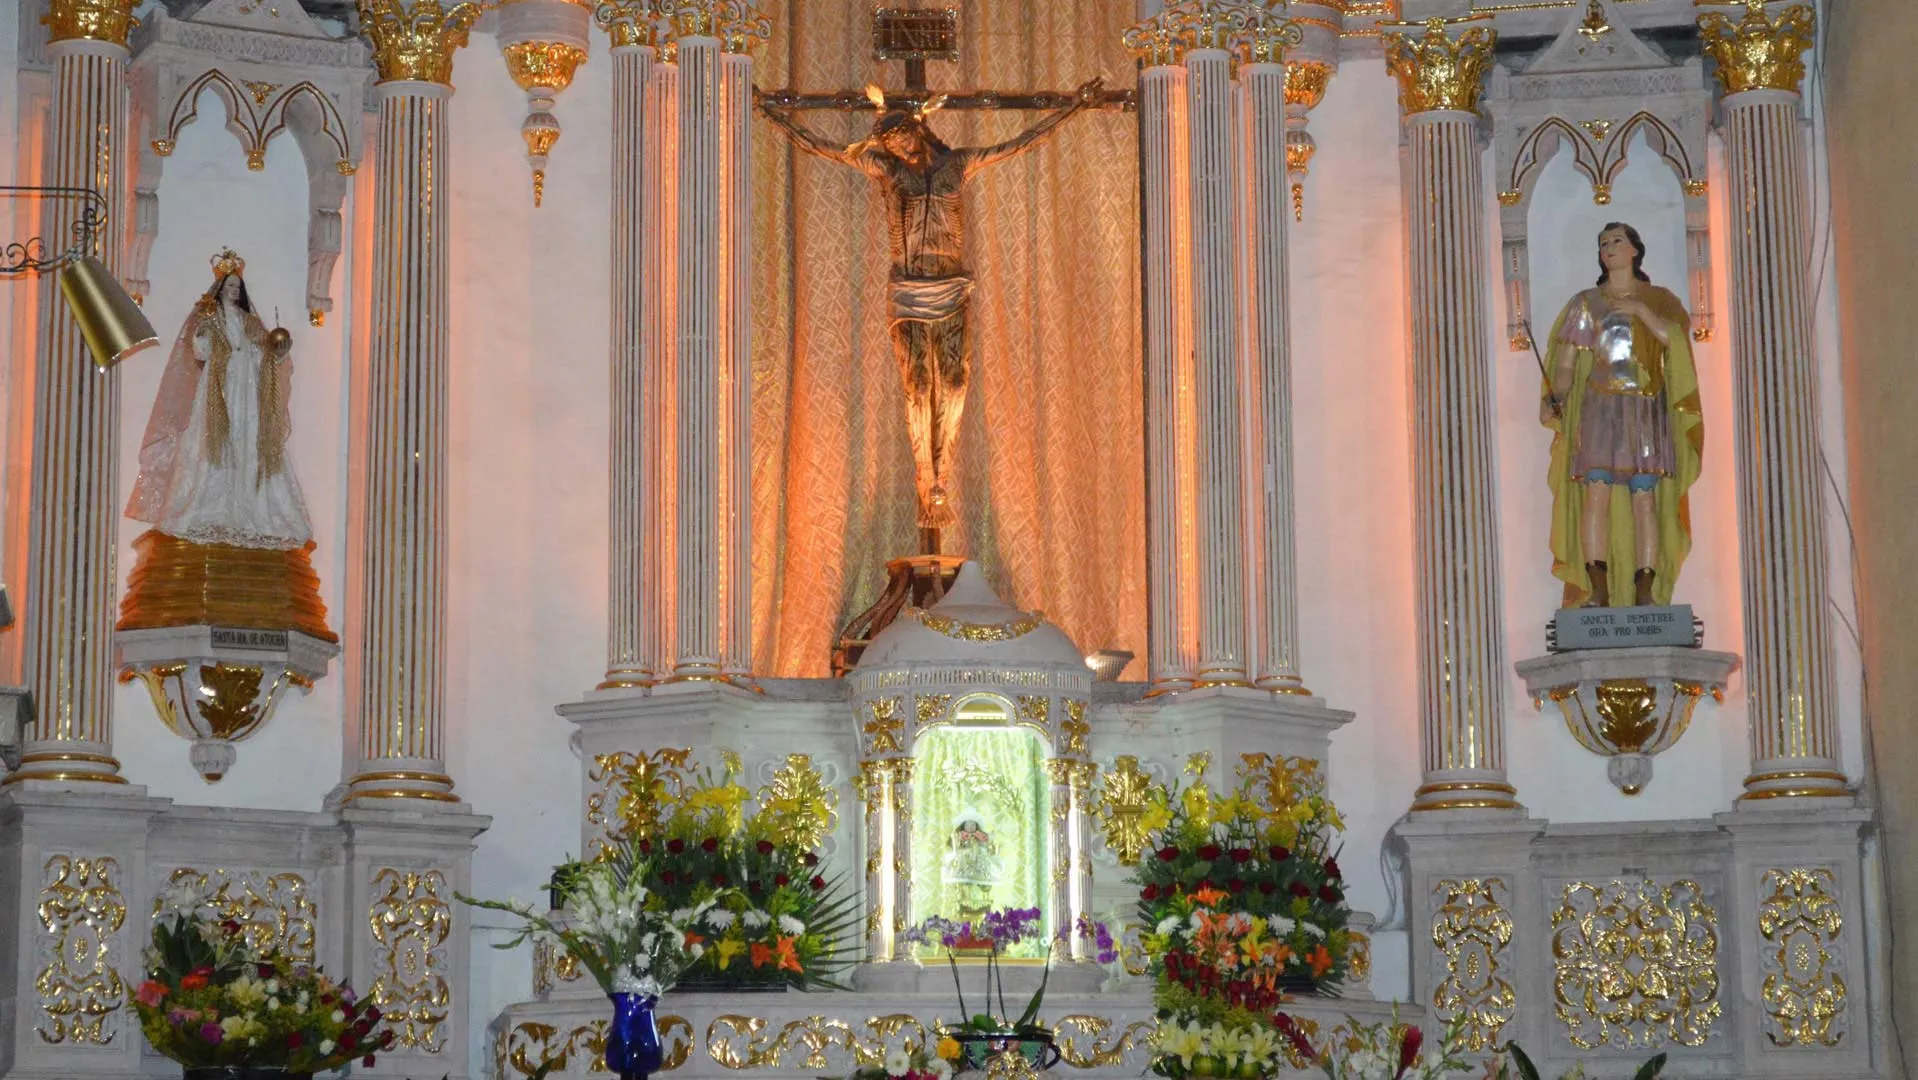 Nota sobre Fiesta de Santiago Apóstol en Moyahua, Zacatecas